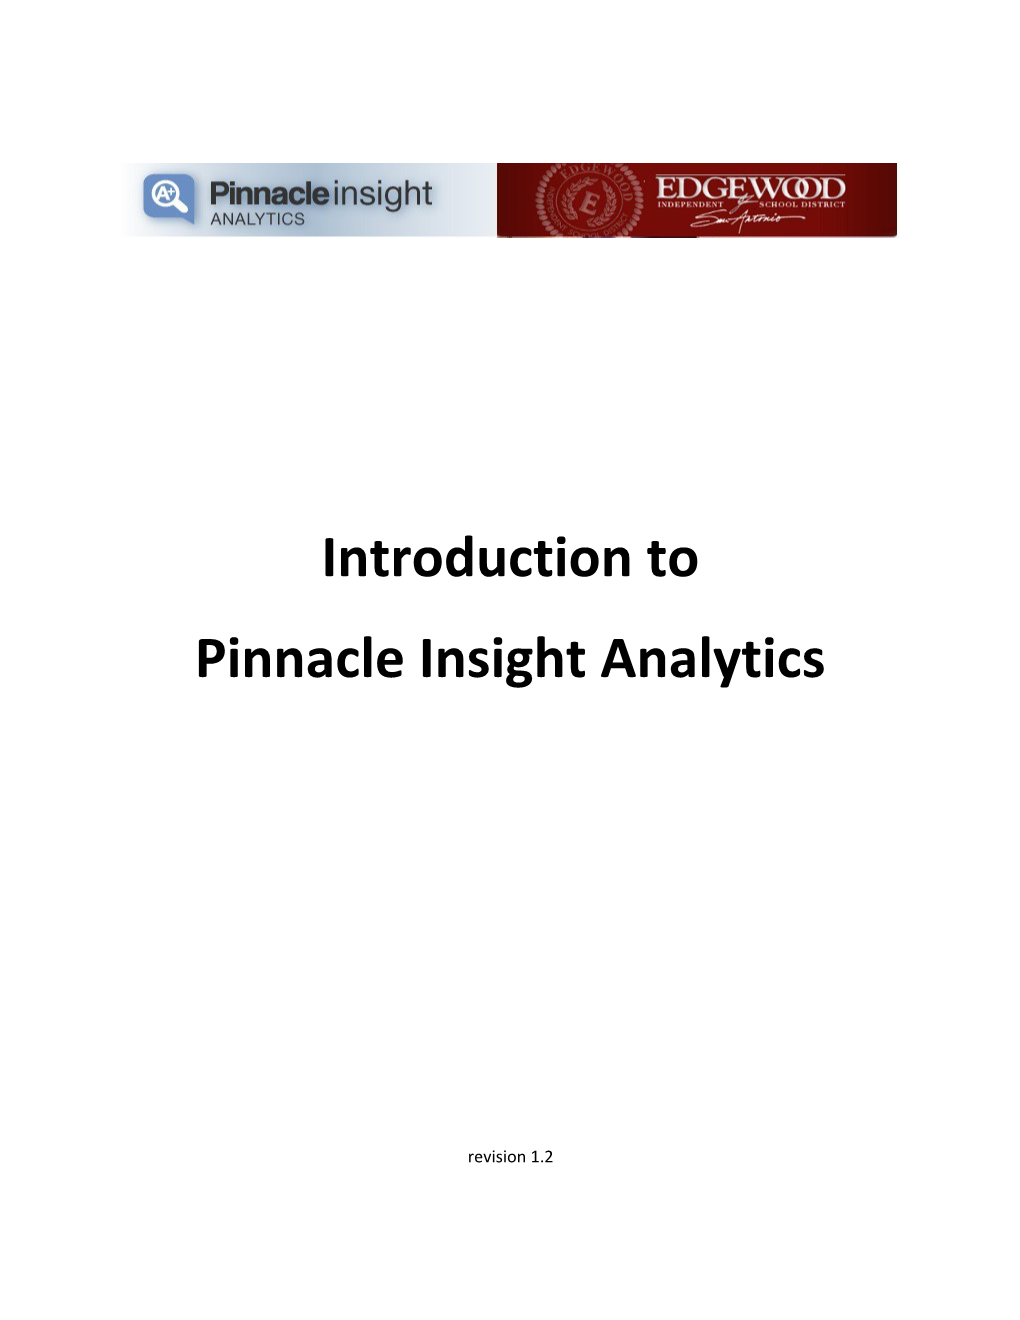 Pinnacle Insight Analytics